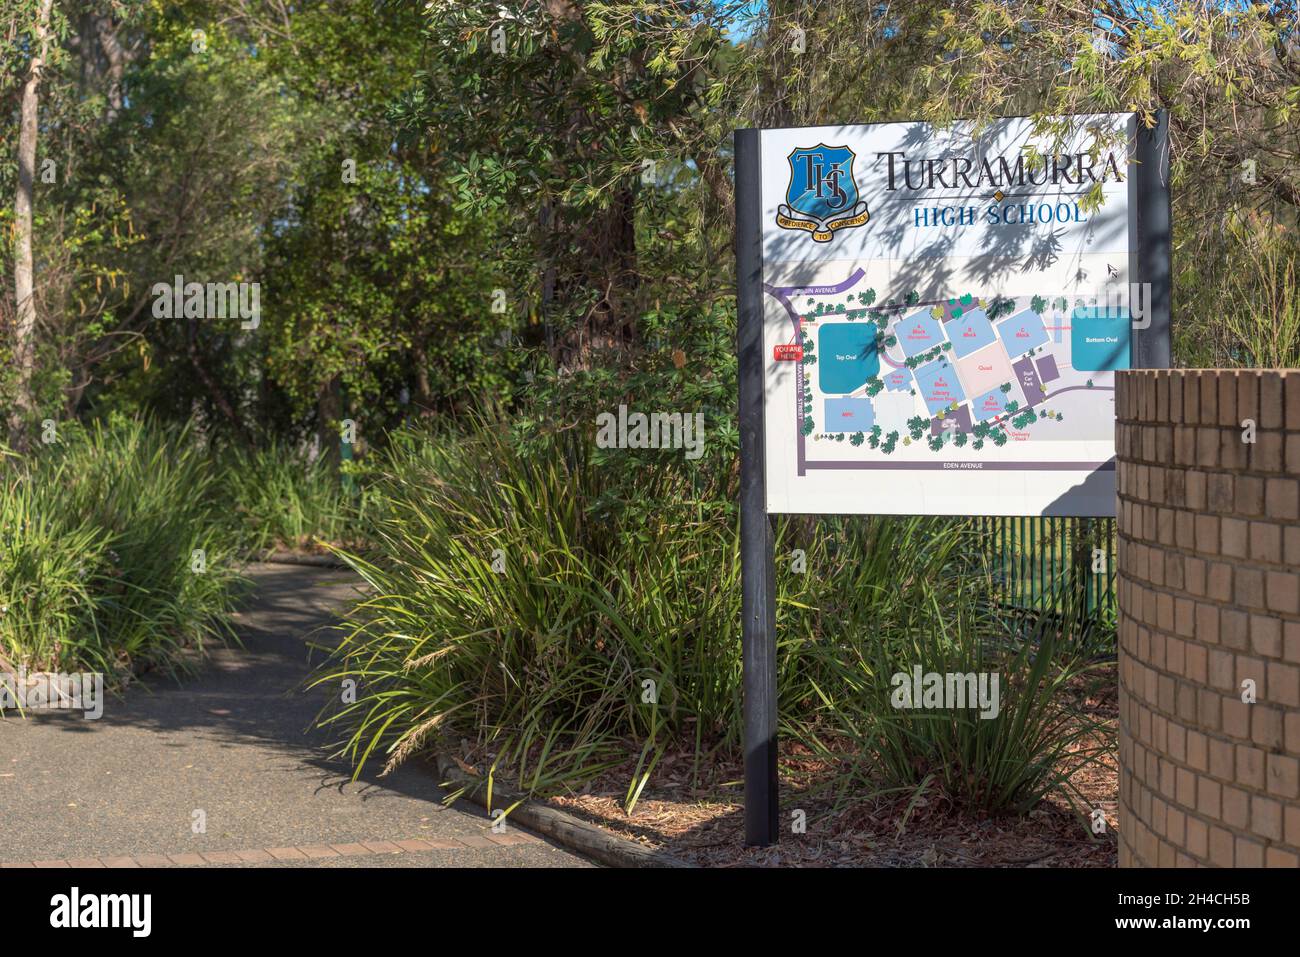 Un sentier de jardin indigène très vert apaisant entrée à Turramurra HighSchool sur la rive nord de Sydney en Australie Banque D'Images